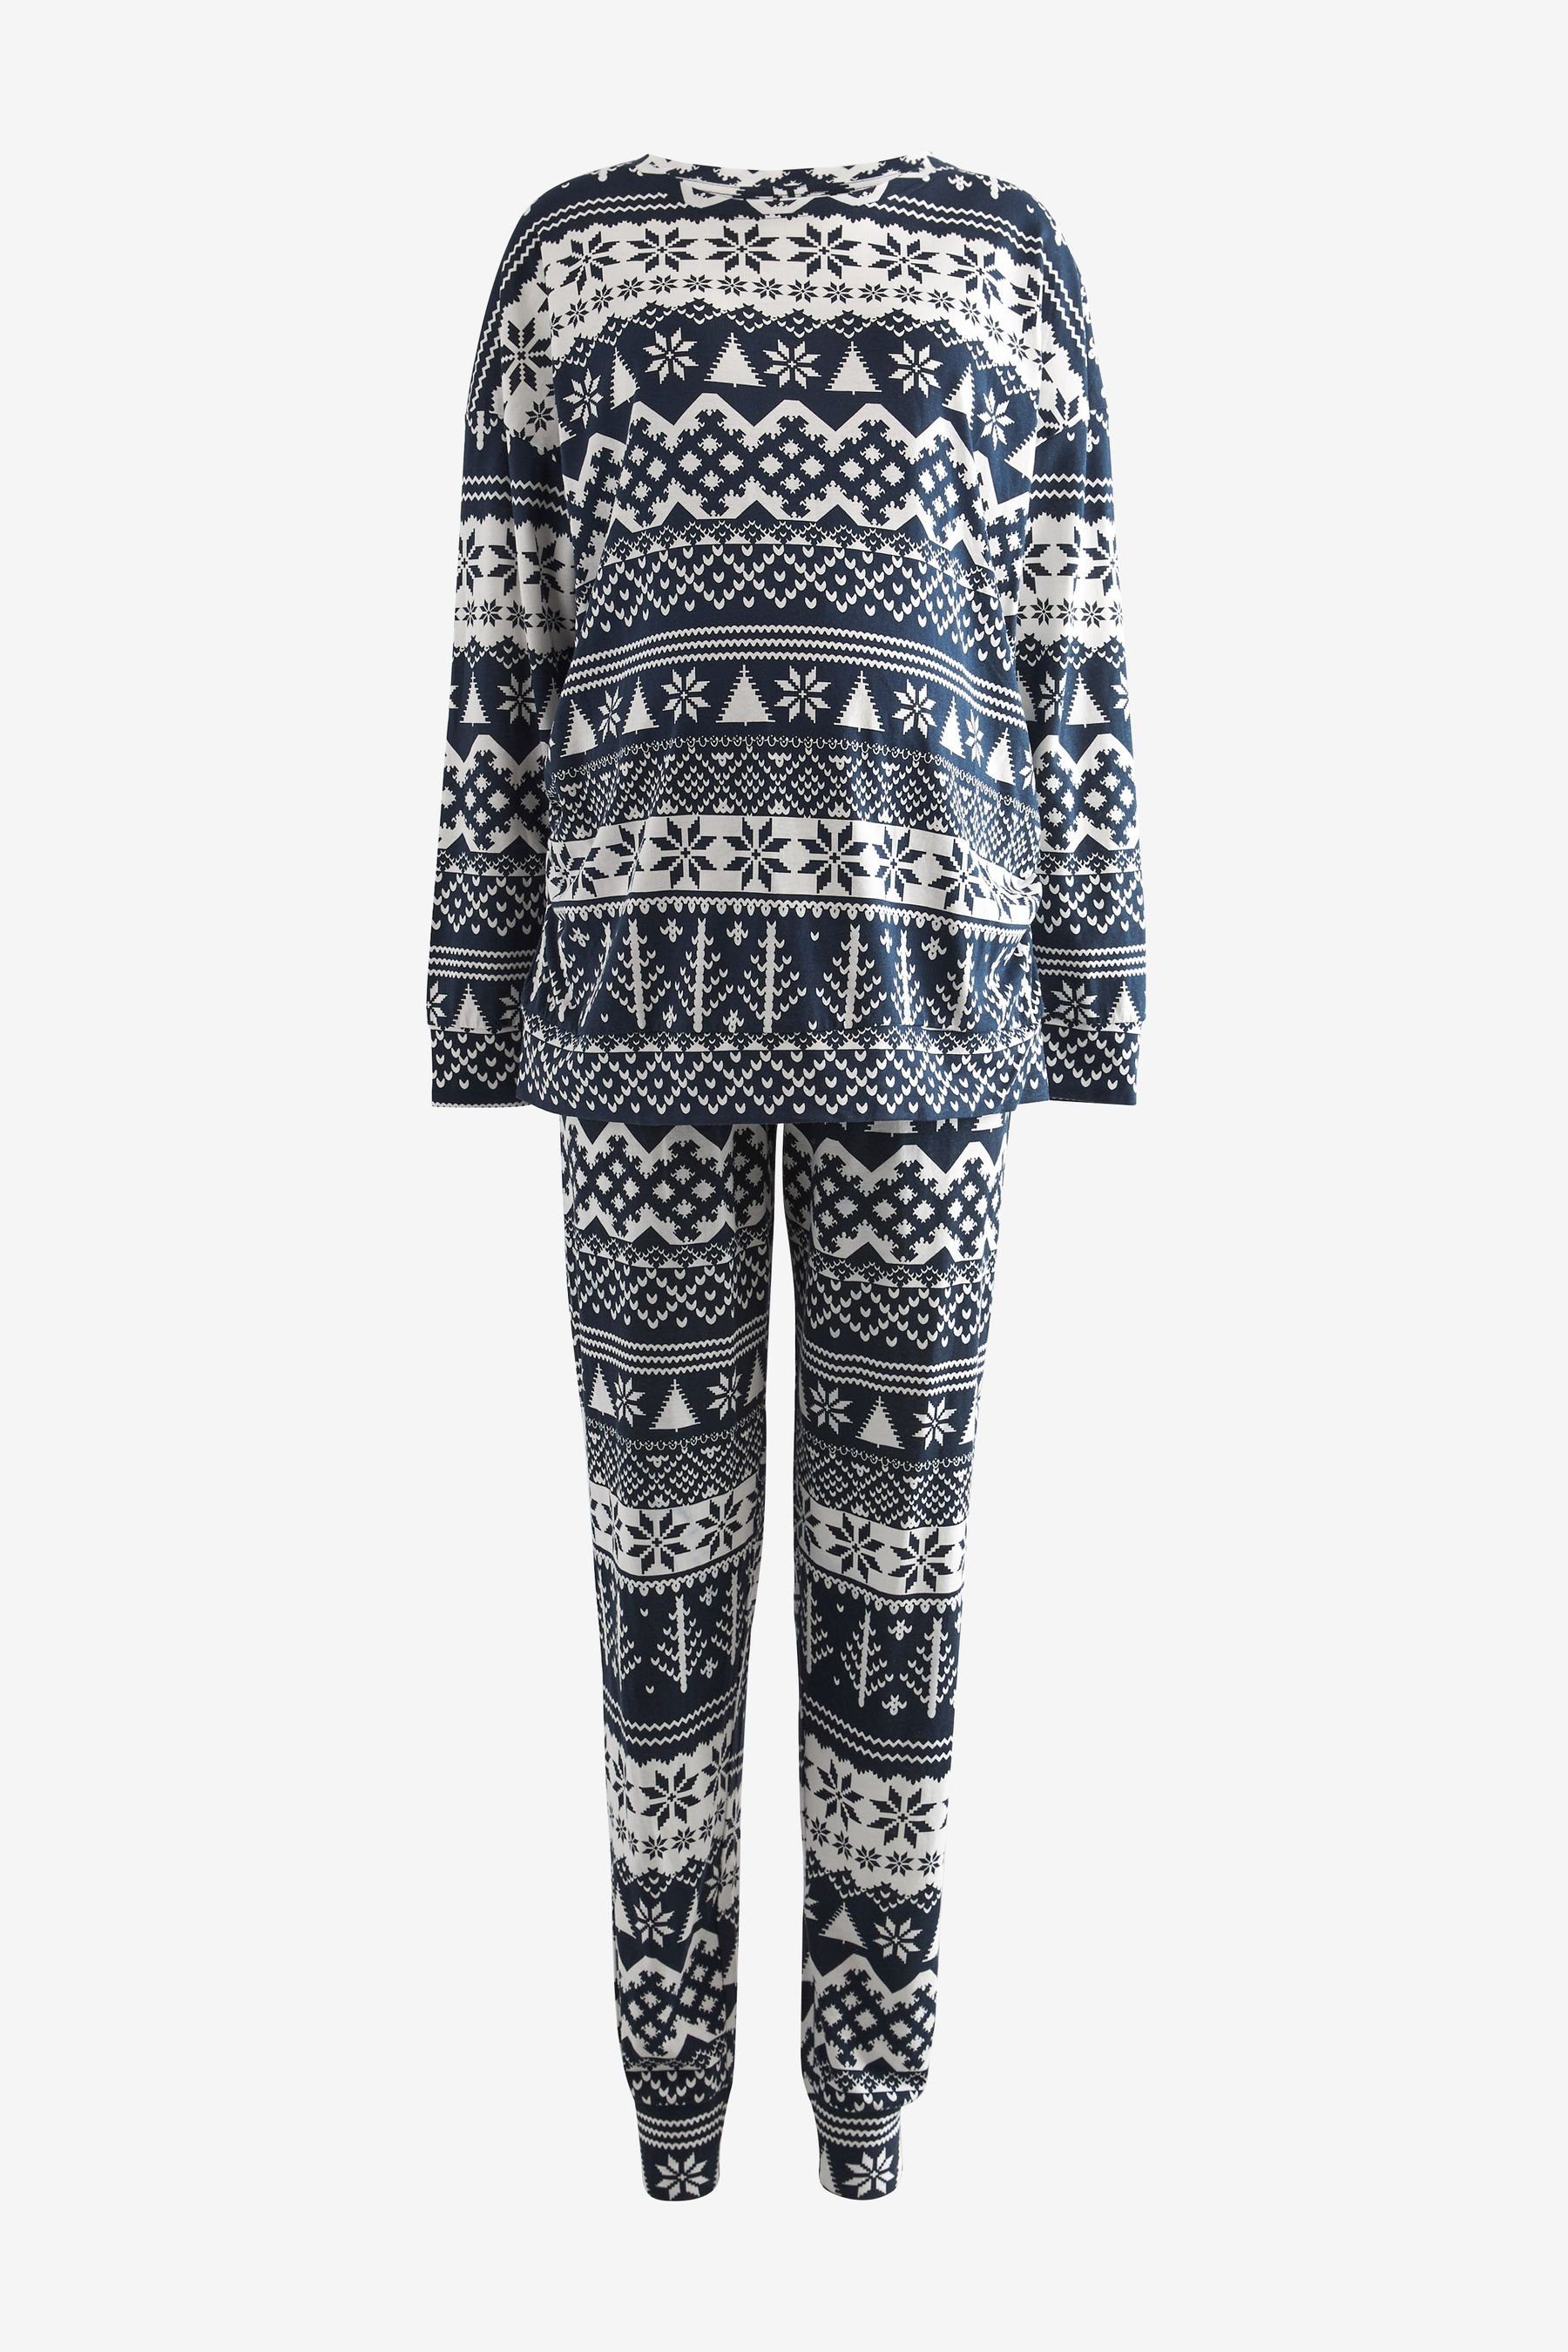 Next Umstandspyjama Damen-Schlafanzug Weihnachten (Familienkollektion) (2  tlg), Aktuelles Design aus England *